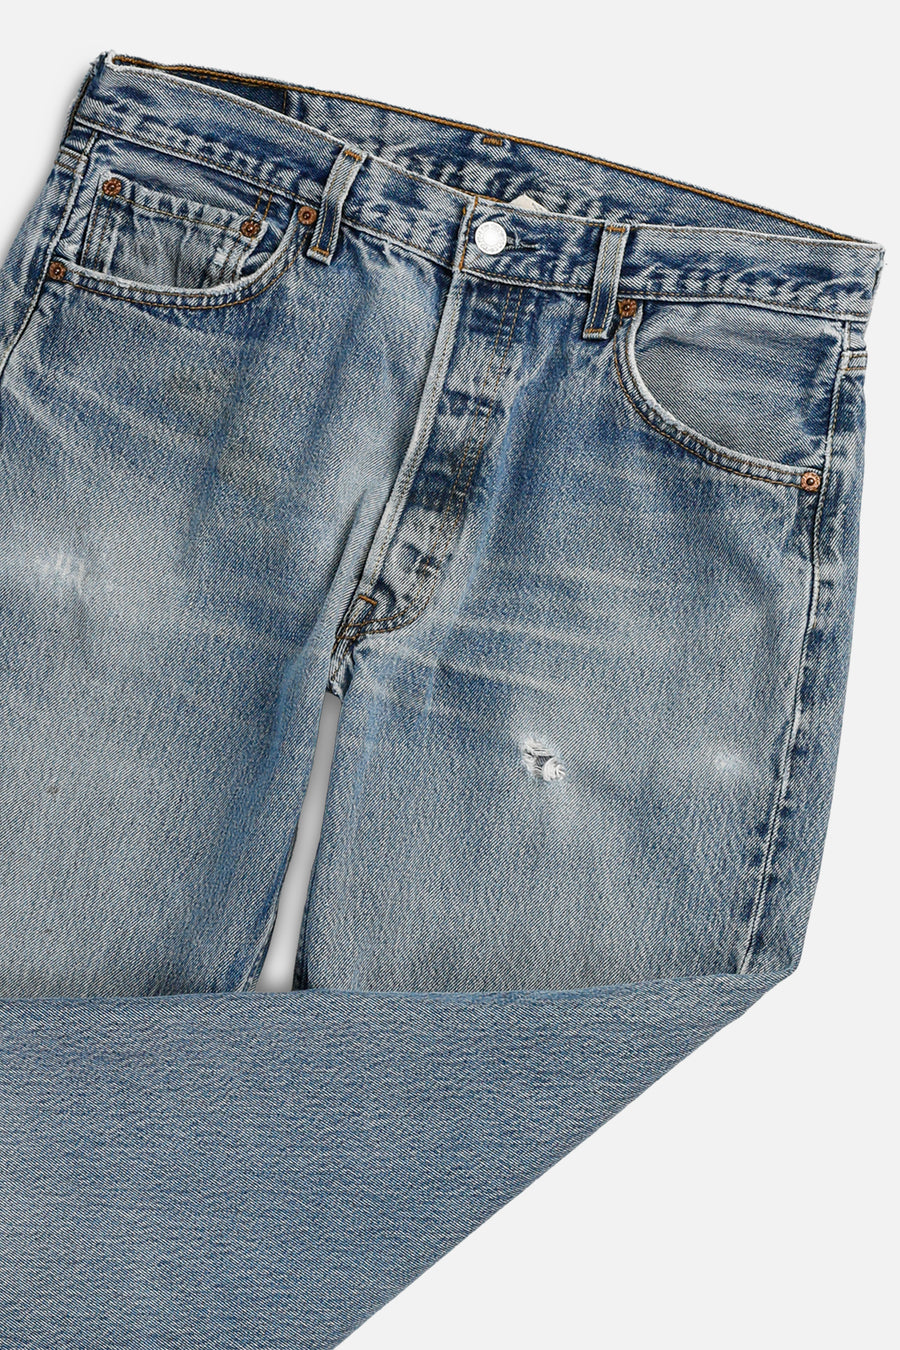 Vintage Levi's Denim Pants - W34 L30